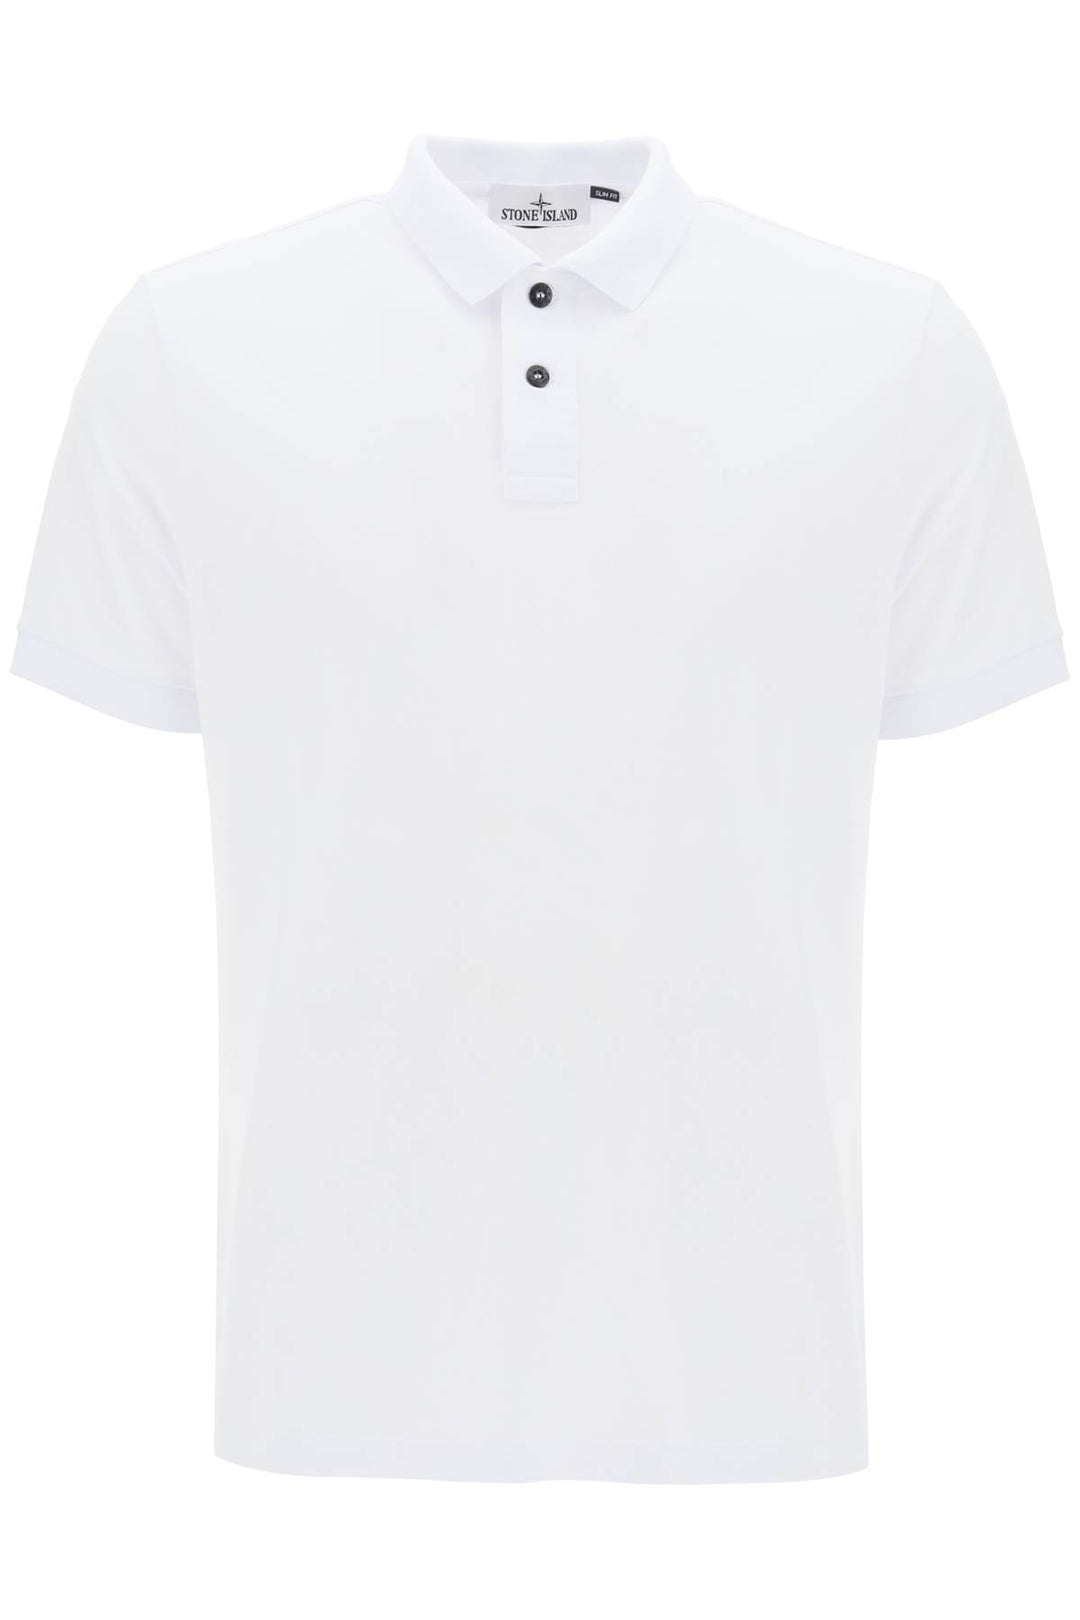 Stone Island Slim Fit Polo Shirt With Logo Patch   Bianco